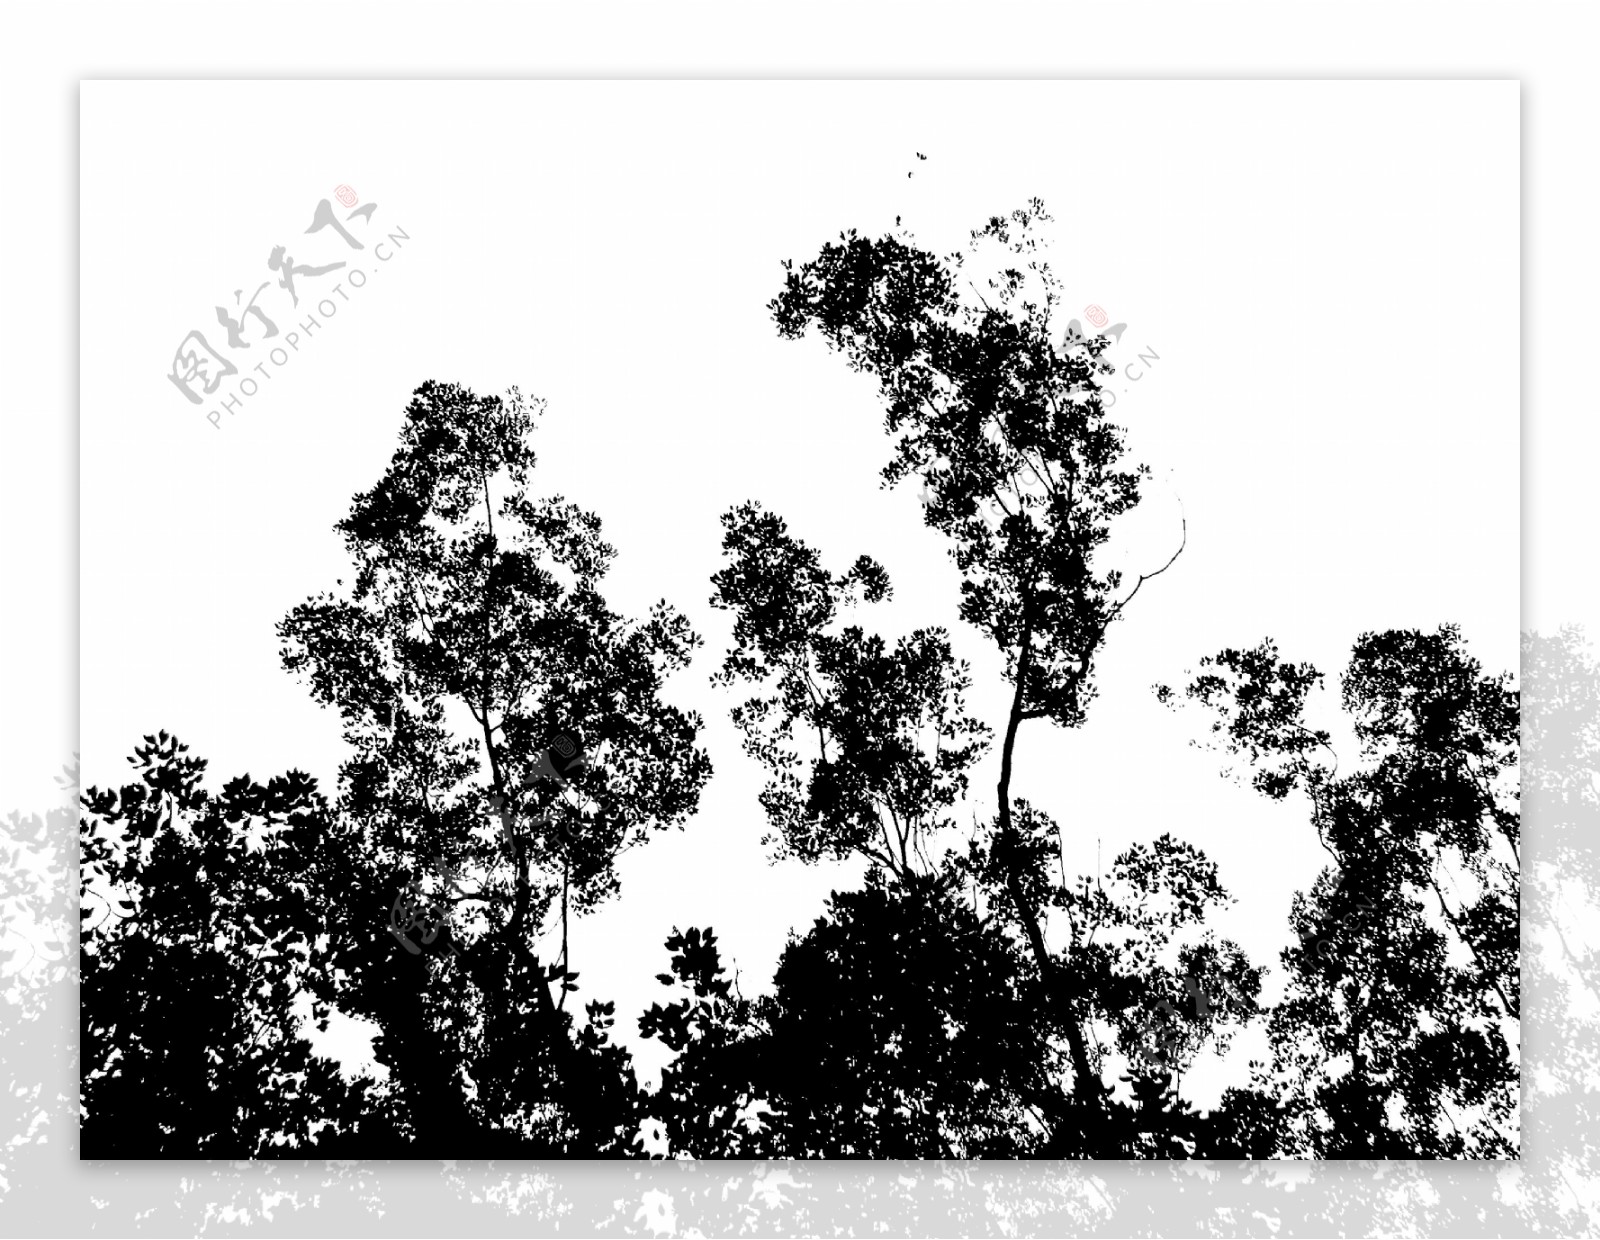 树木剪影2图片